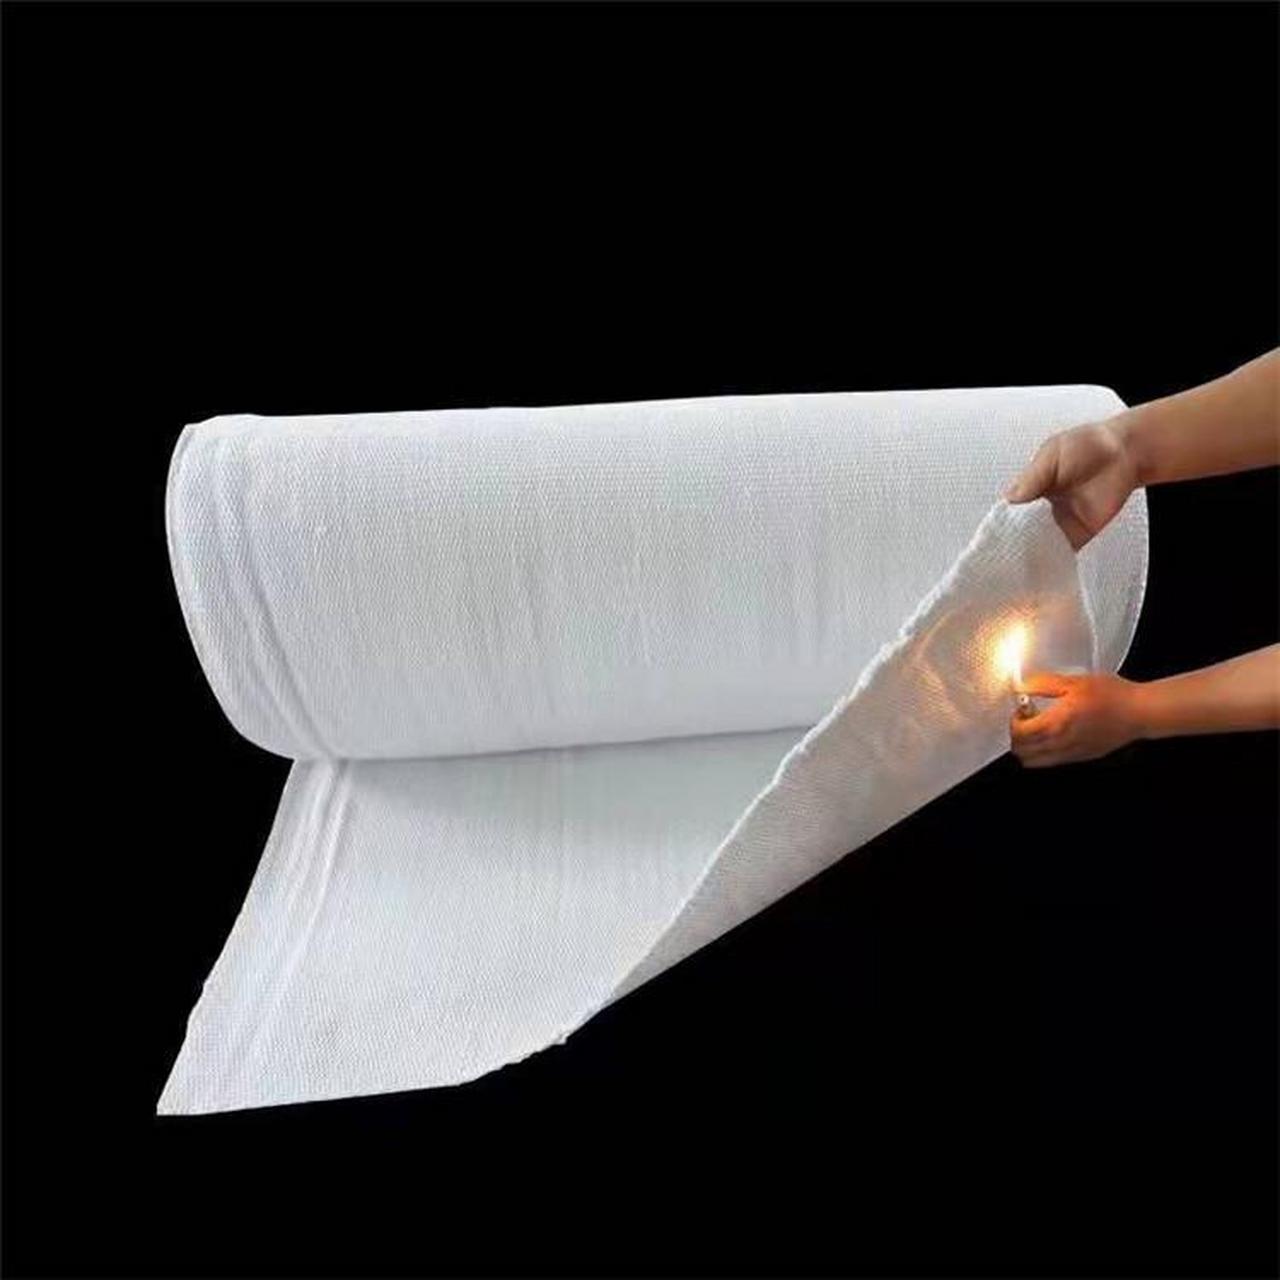 布是由优质石棉纱线经纬交织而成,按其材料跟功效可分为:无尘石棉布